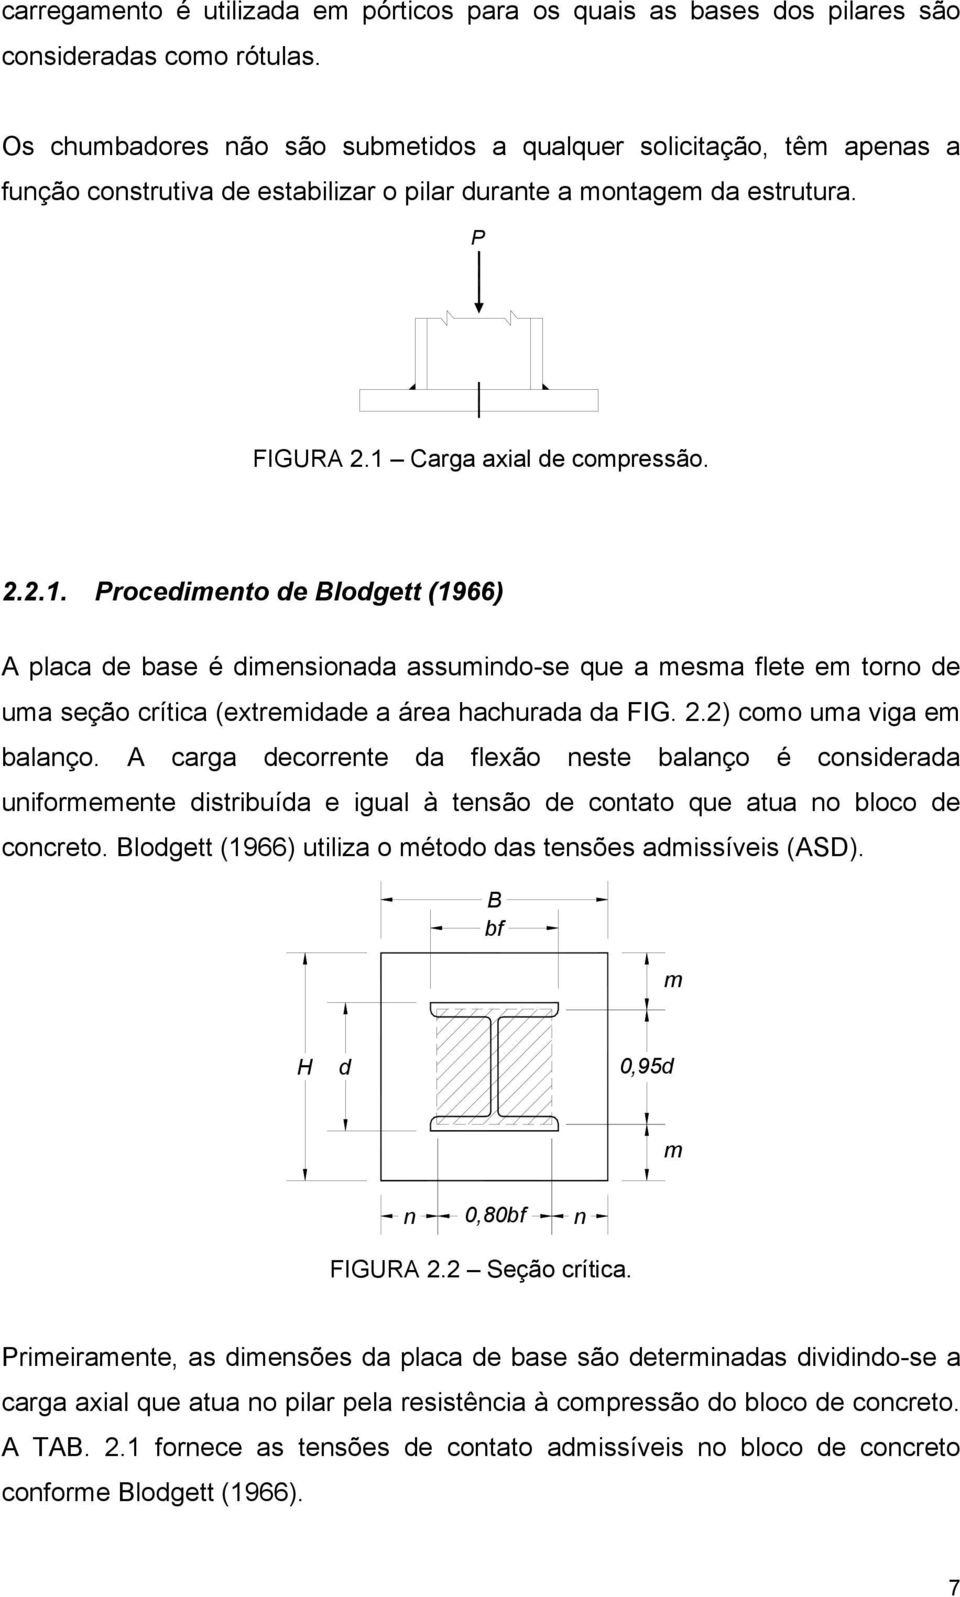 Carga axial de compressão. 2.2.1. Procedimento de Blodgett (1966) A placa de base é dimensionada assumindo-se que a mesma flete em torno de uma seção crítica (extremidade a área hachurada da FIG. 2.2) como uma viga em balanço.